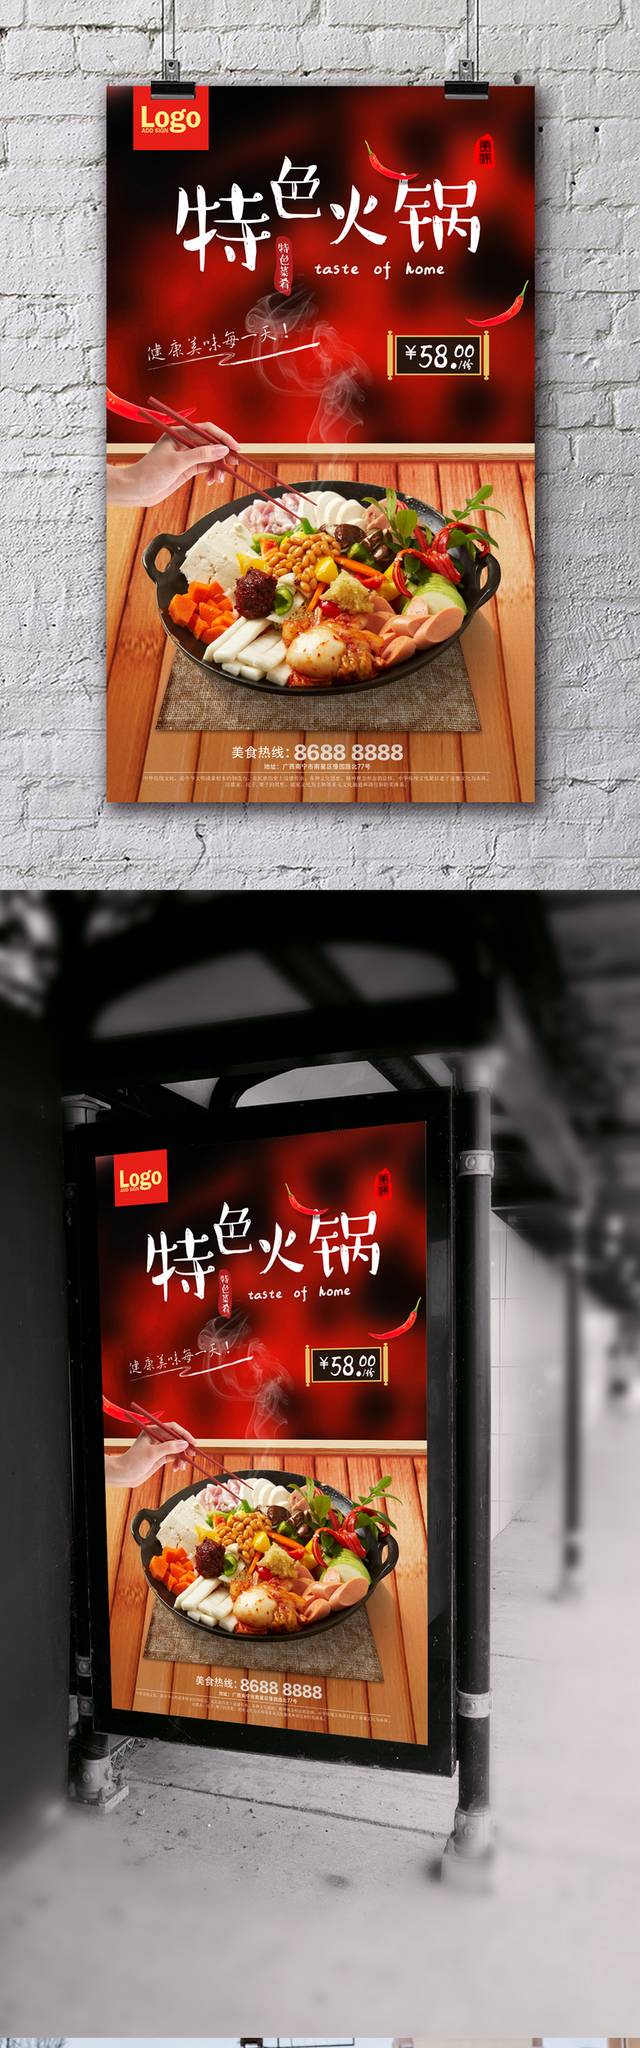 高档火锅促销宣传海报设计